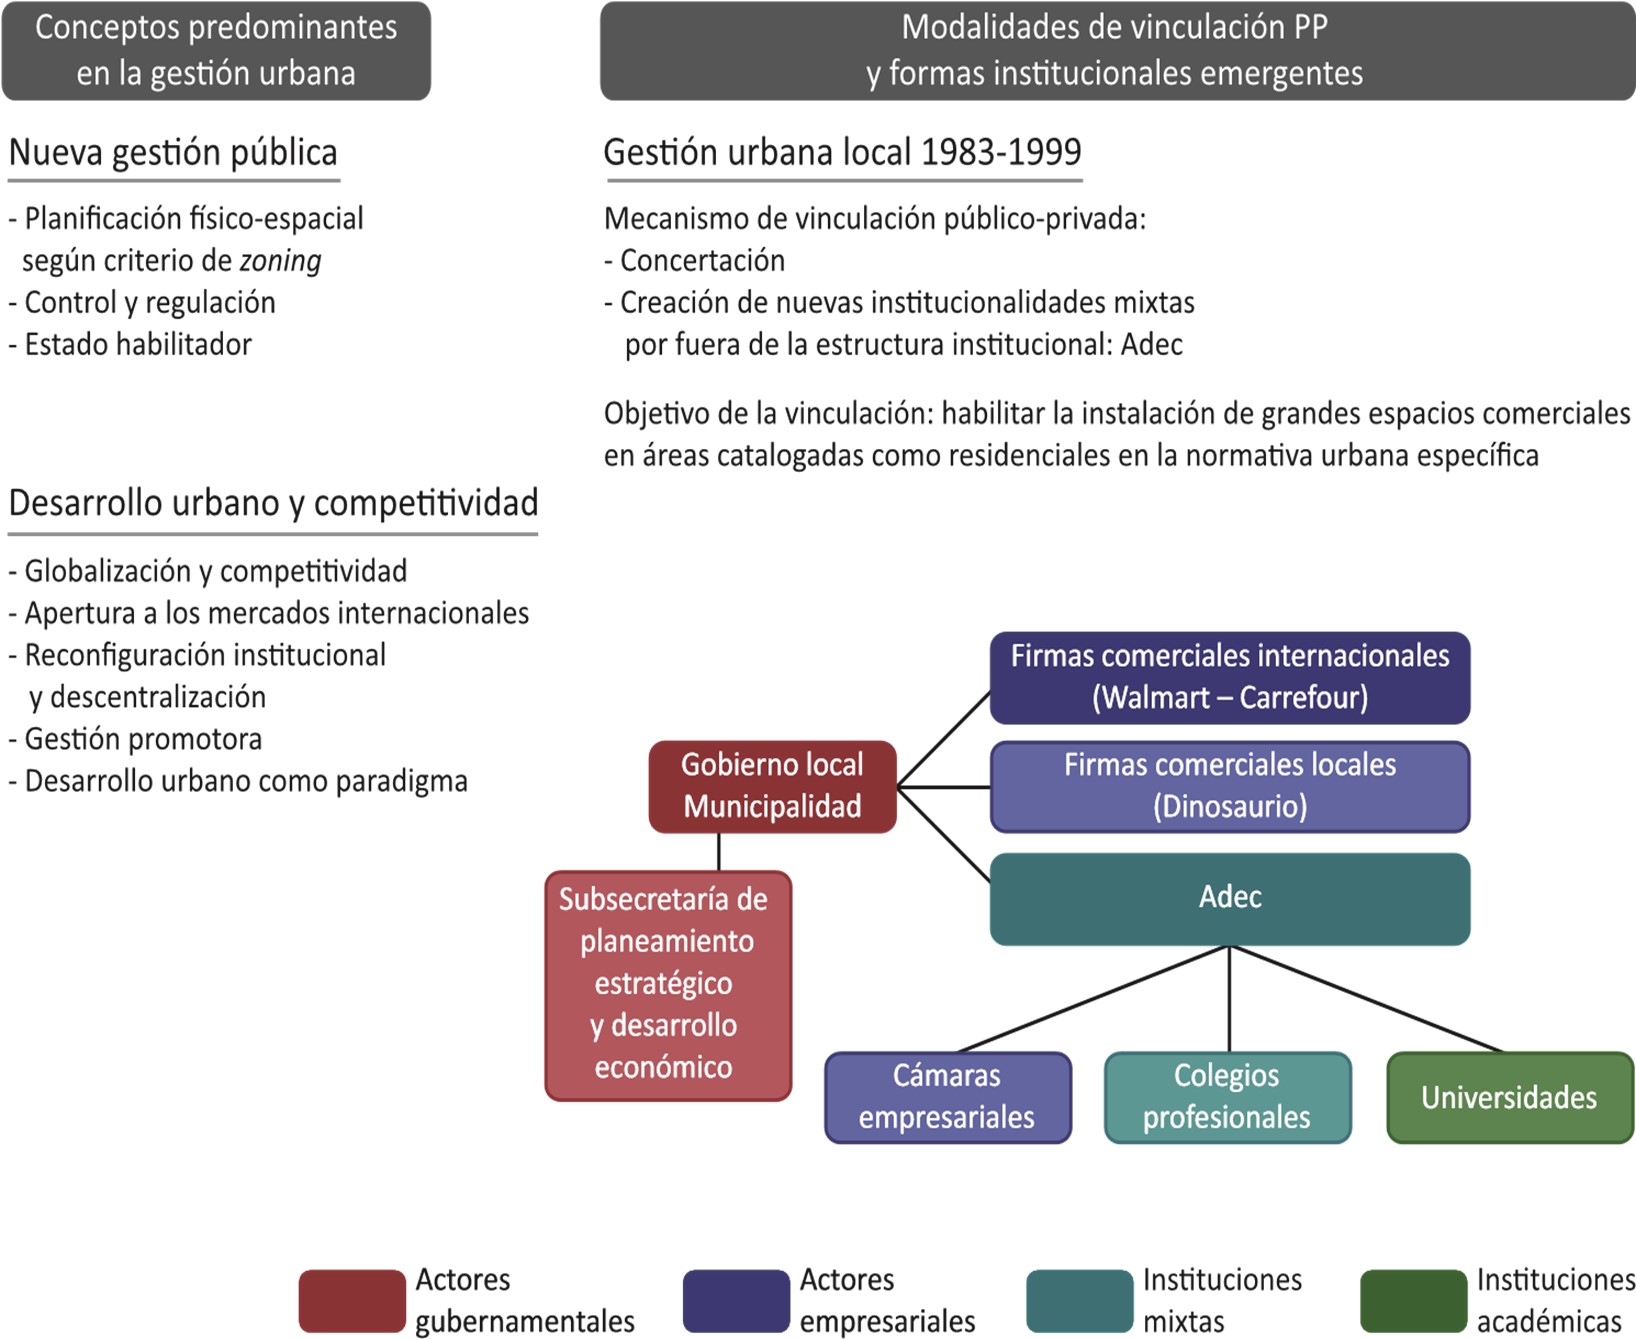 Conceptos predominantes y modalidades de vinculación público-privada,
implementados en la gestión urbana local. (Córdoba, Argentina, 1983-1999)